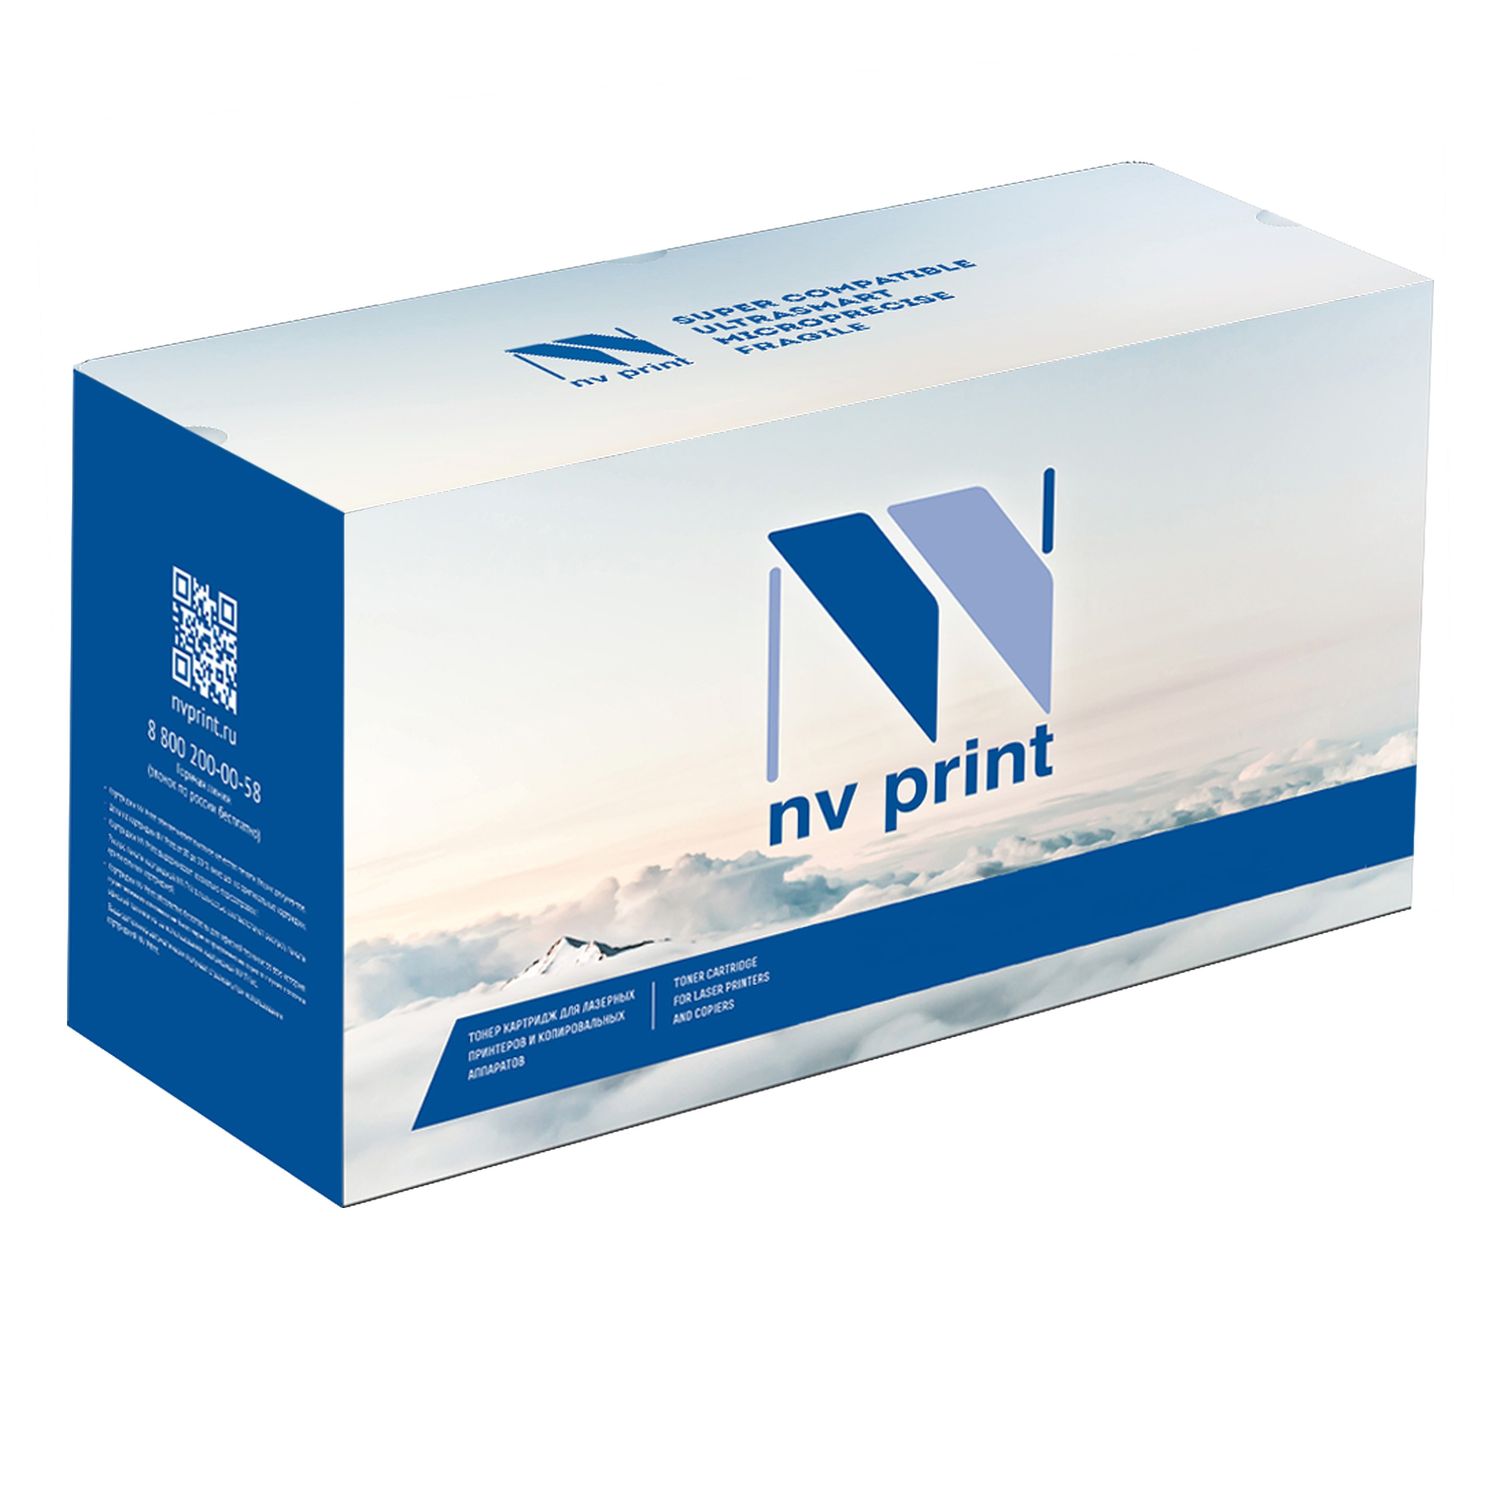 Картридж NV Print CE285Х для HP LJ P1102/ P1120/ M1132/ M1212/ M1214 картридж nv print ce285a для hp laserjet pro p1102 m1132 m1212 m1214 m1217 1600k